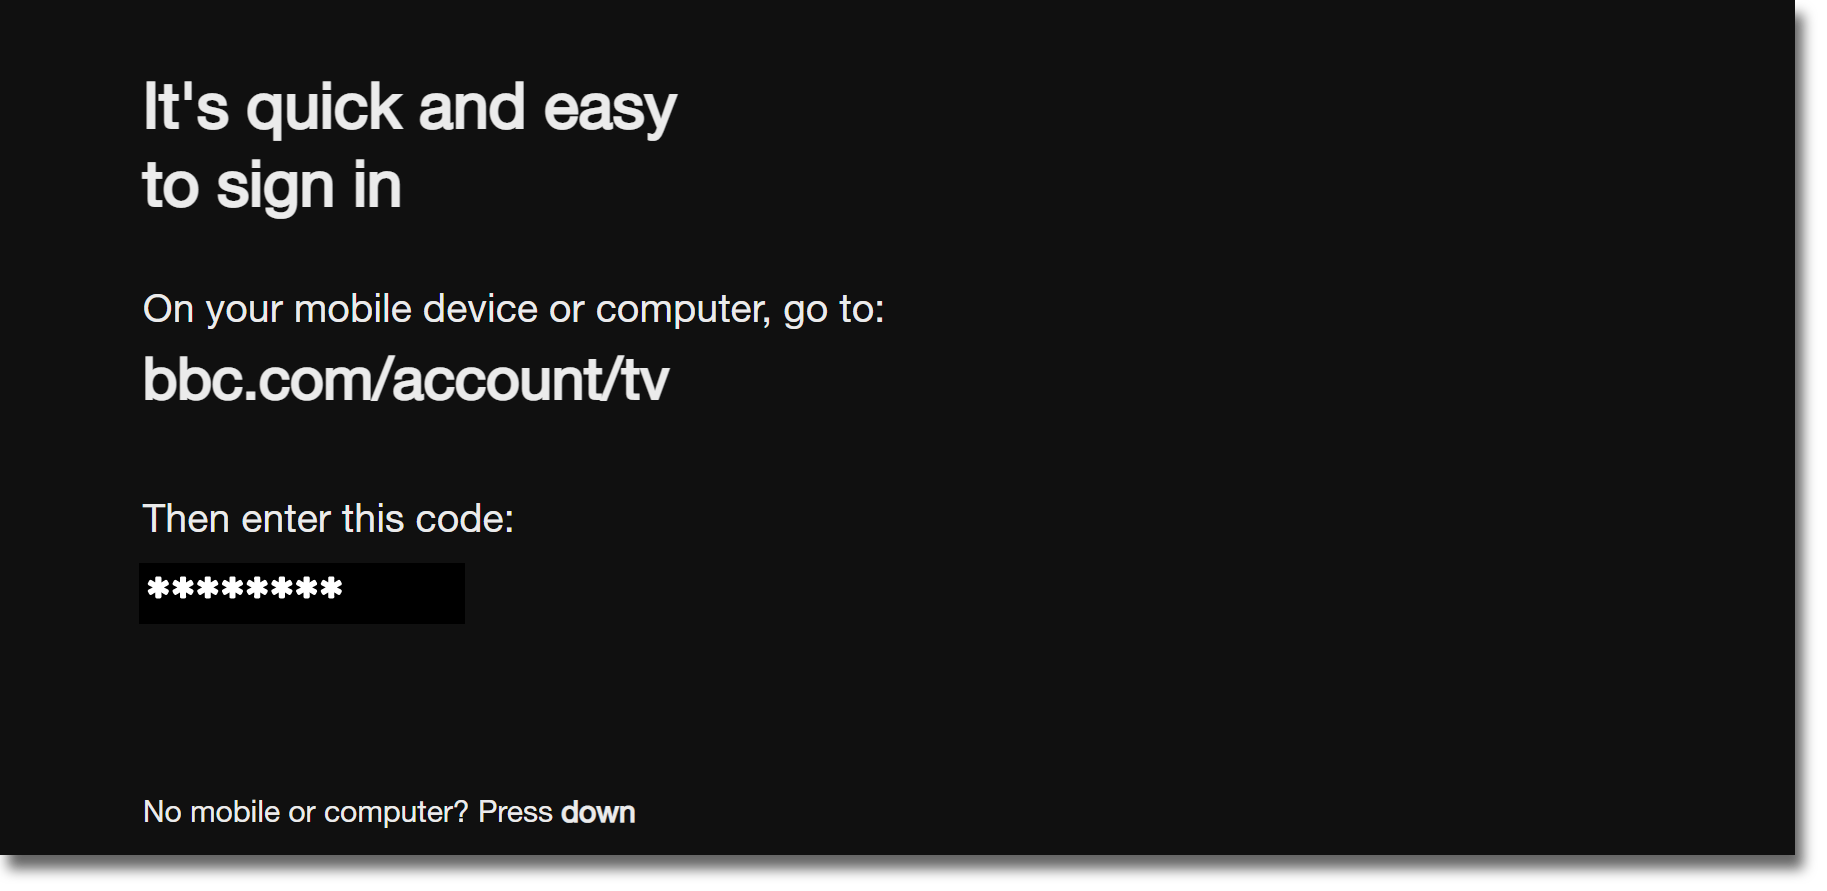 bbc.com/account/tv forgot password